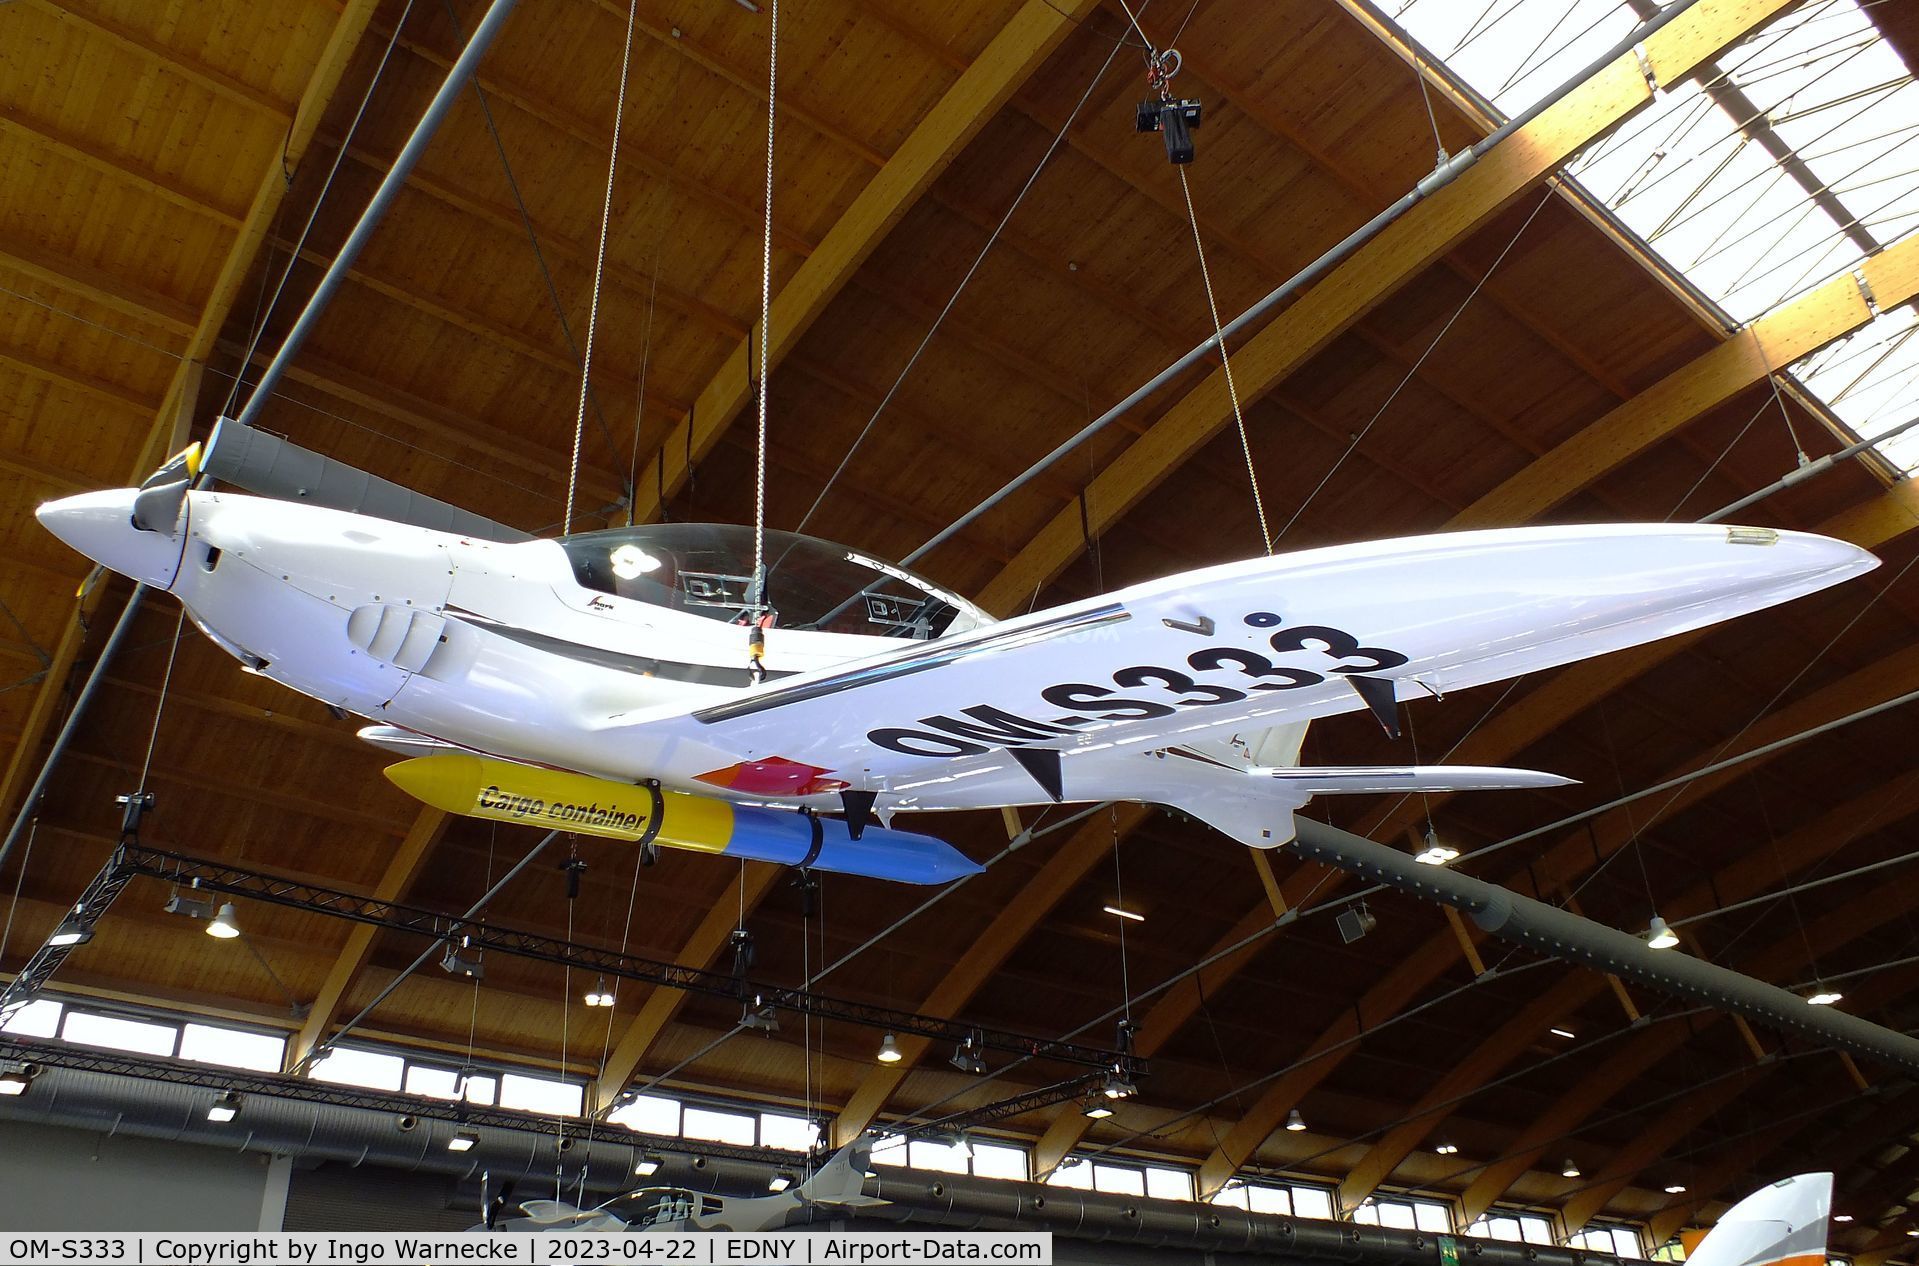 OM-S333, 2018 Shark Aero Shark C/N 067/2018, Shark Aero Shark at the AERO 2023, Friedrichshafen